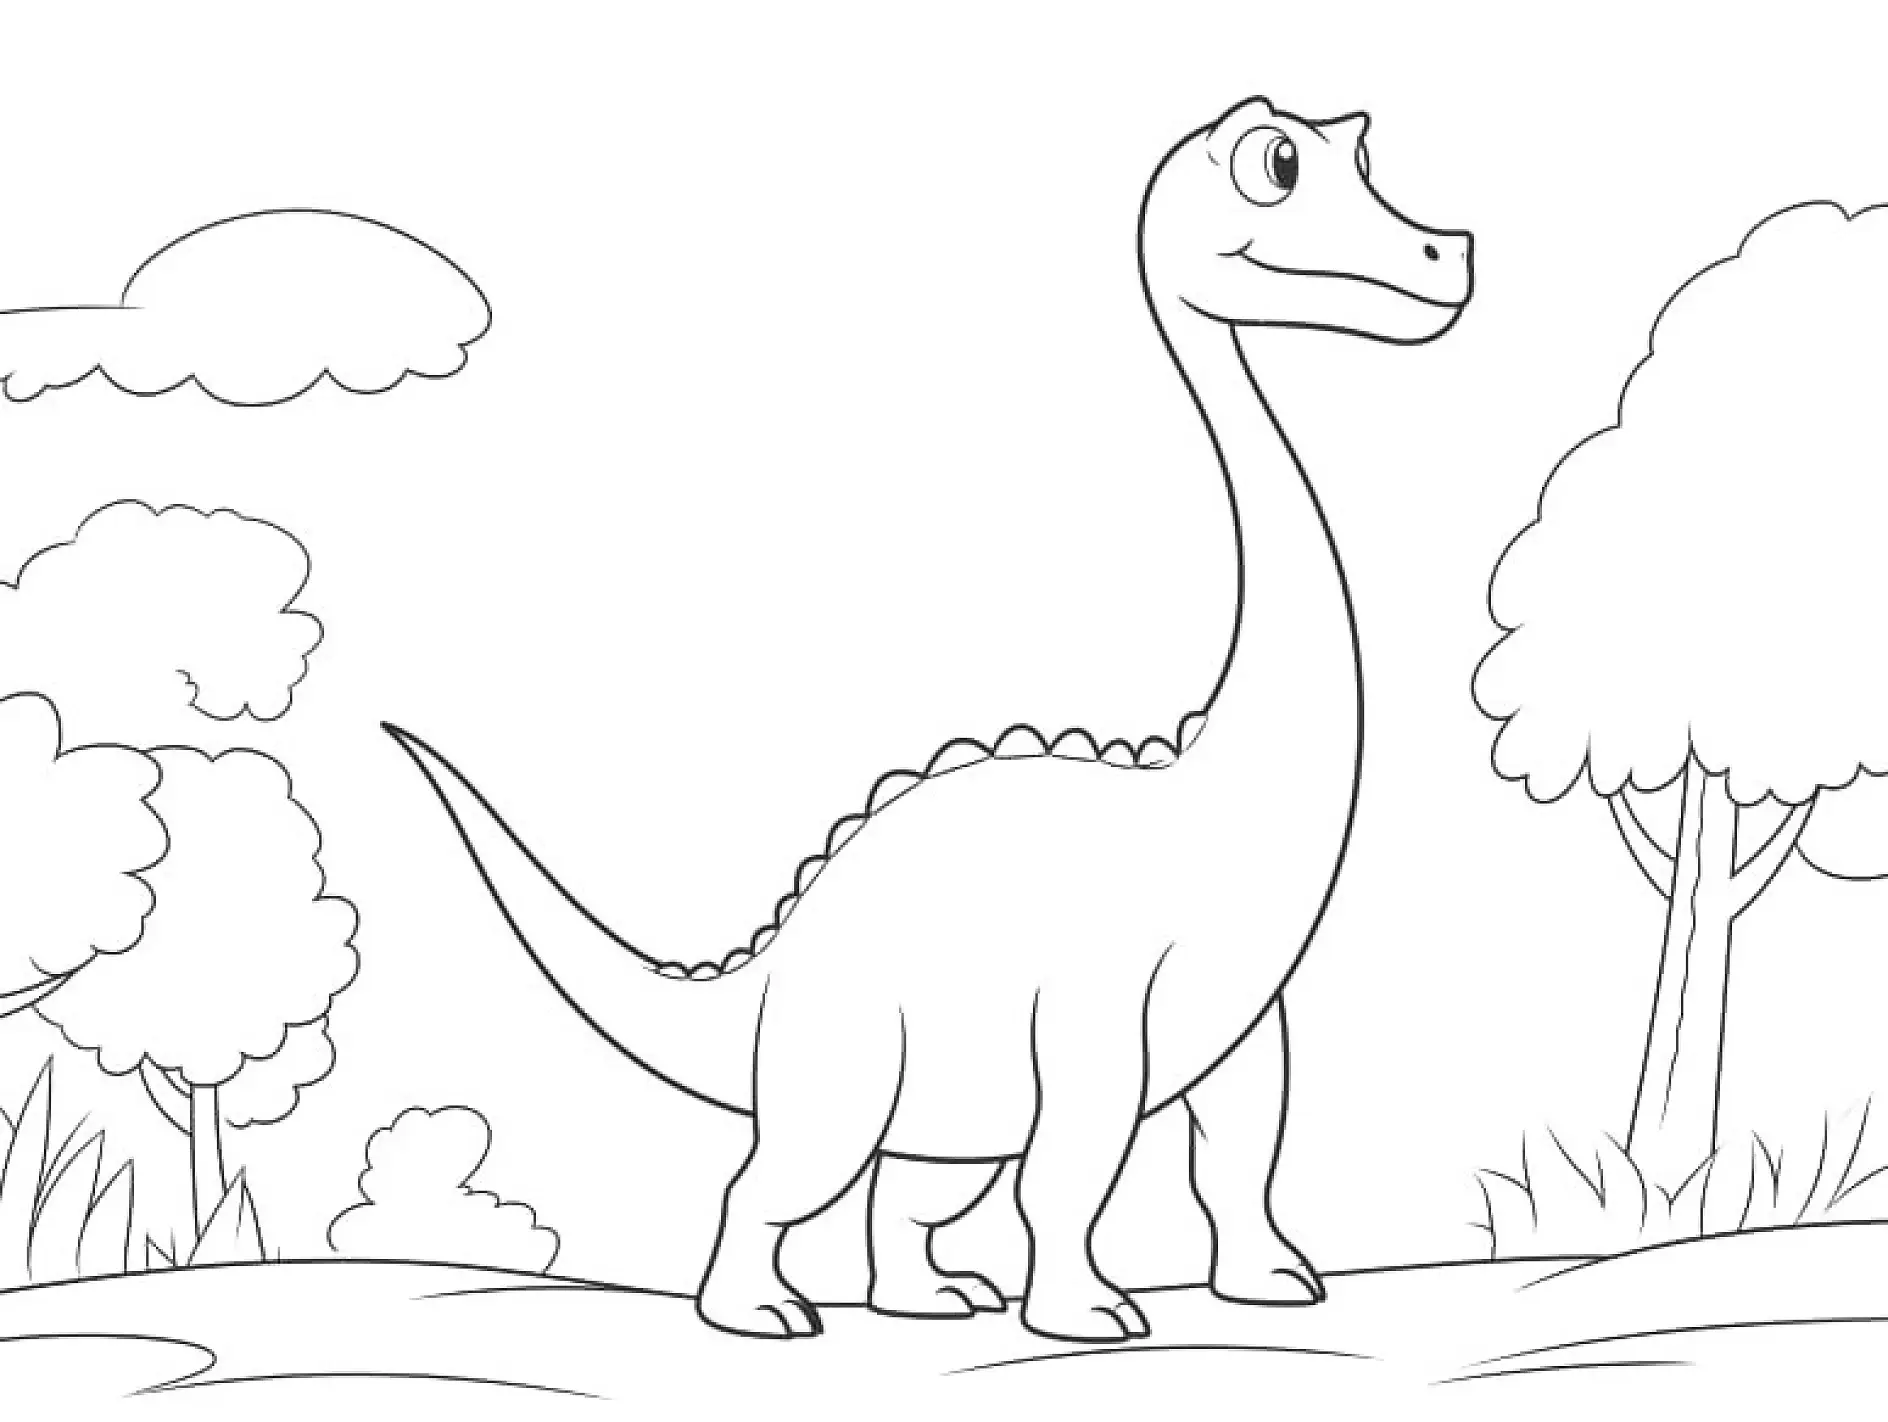 Ausmalbild Dinosaurier mit langem Hals steht neugierig zwischen Bäumen